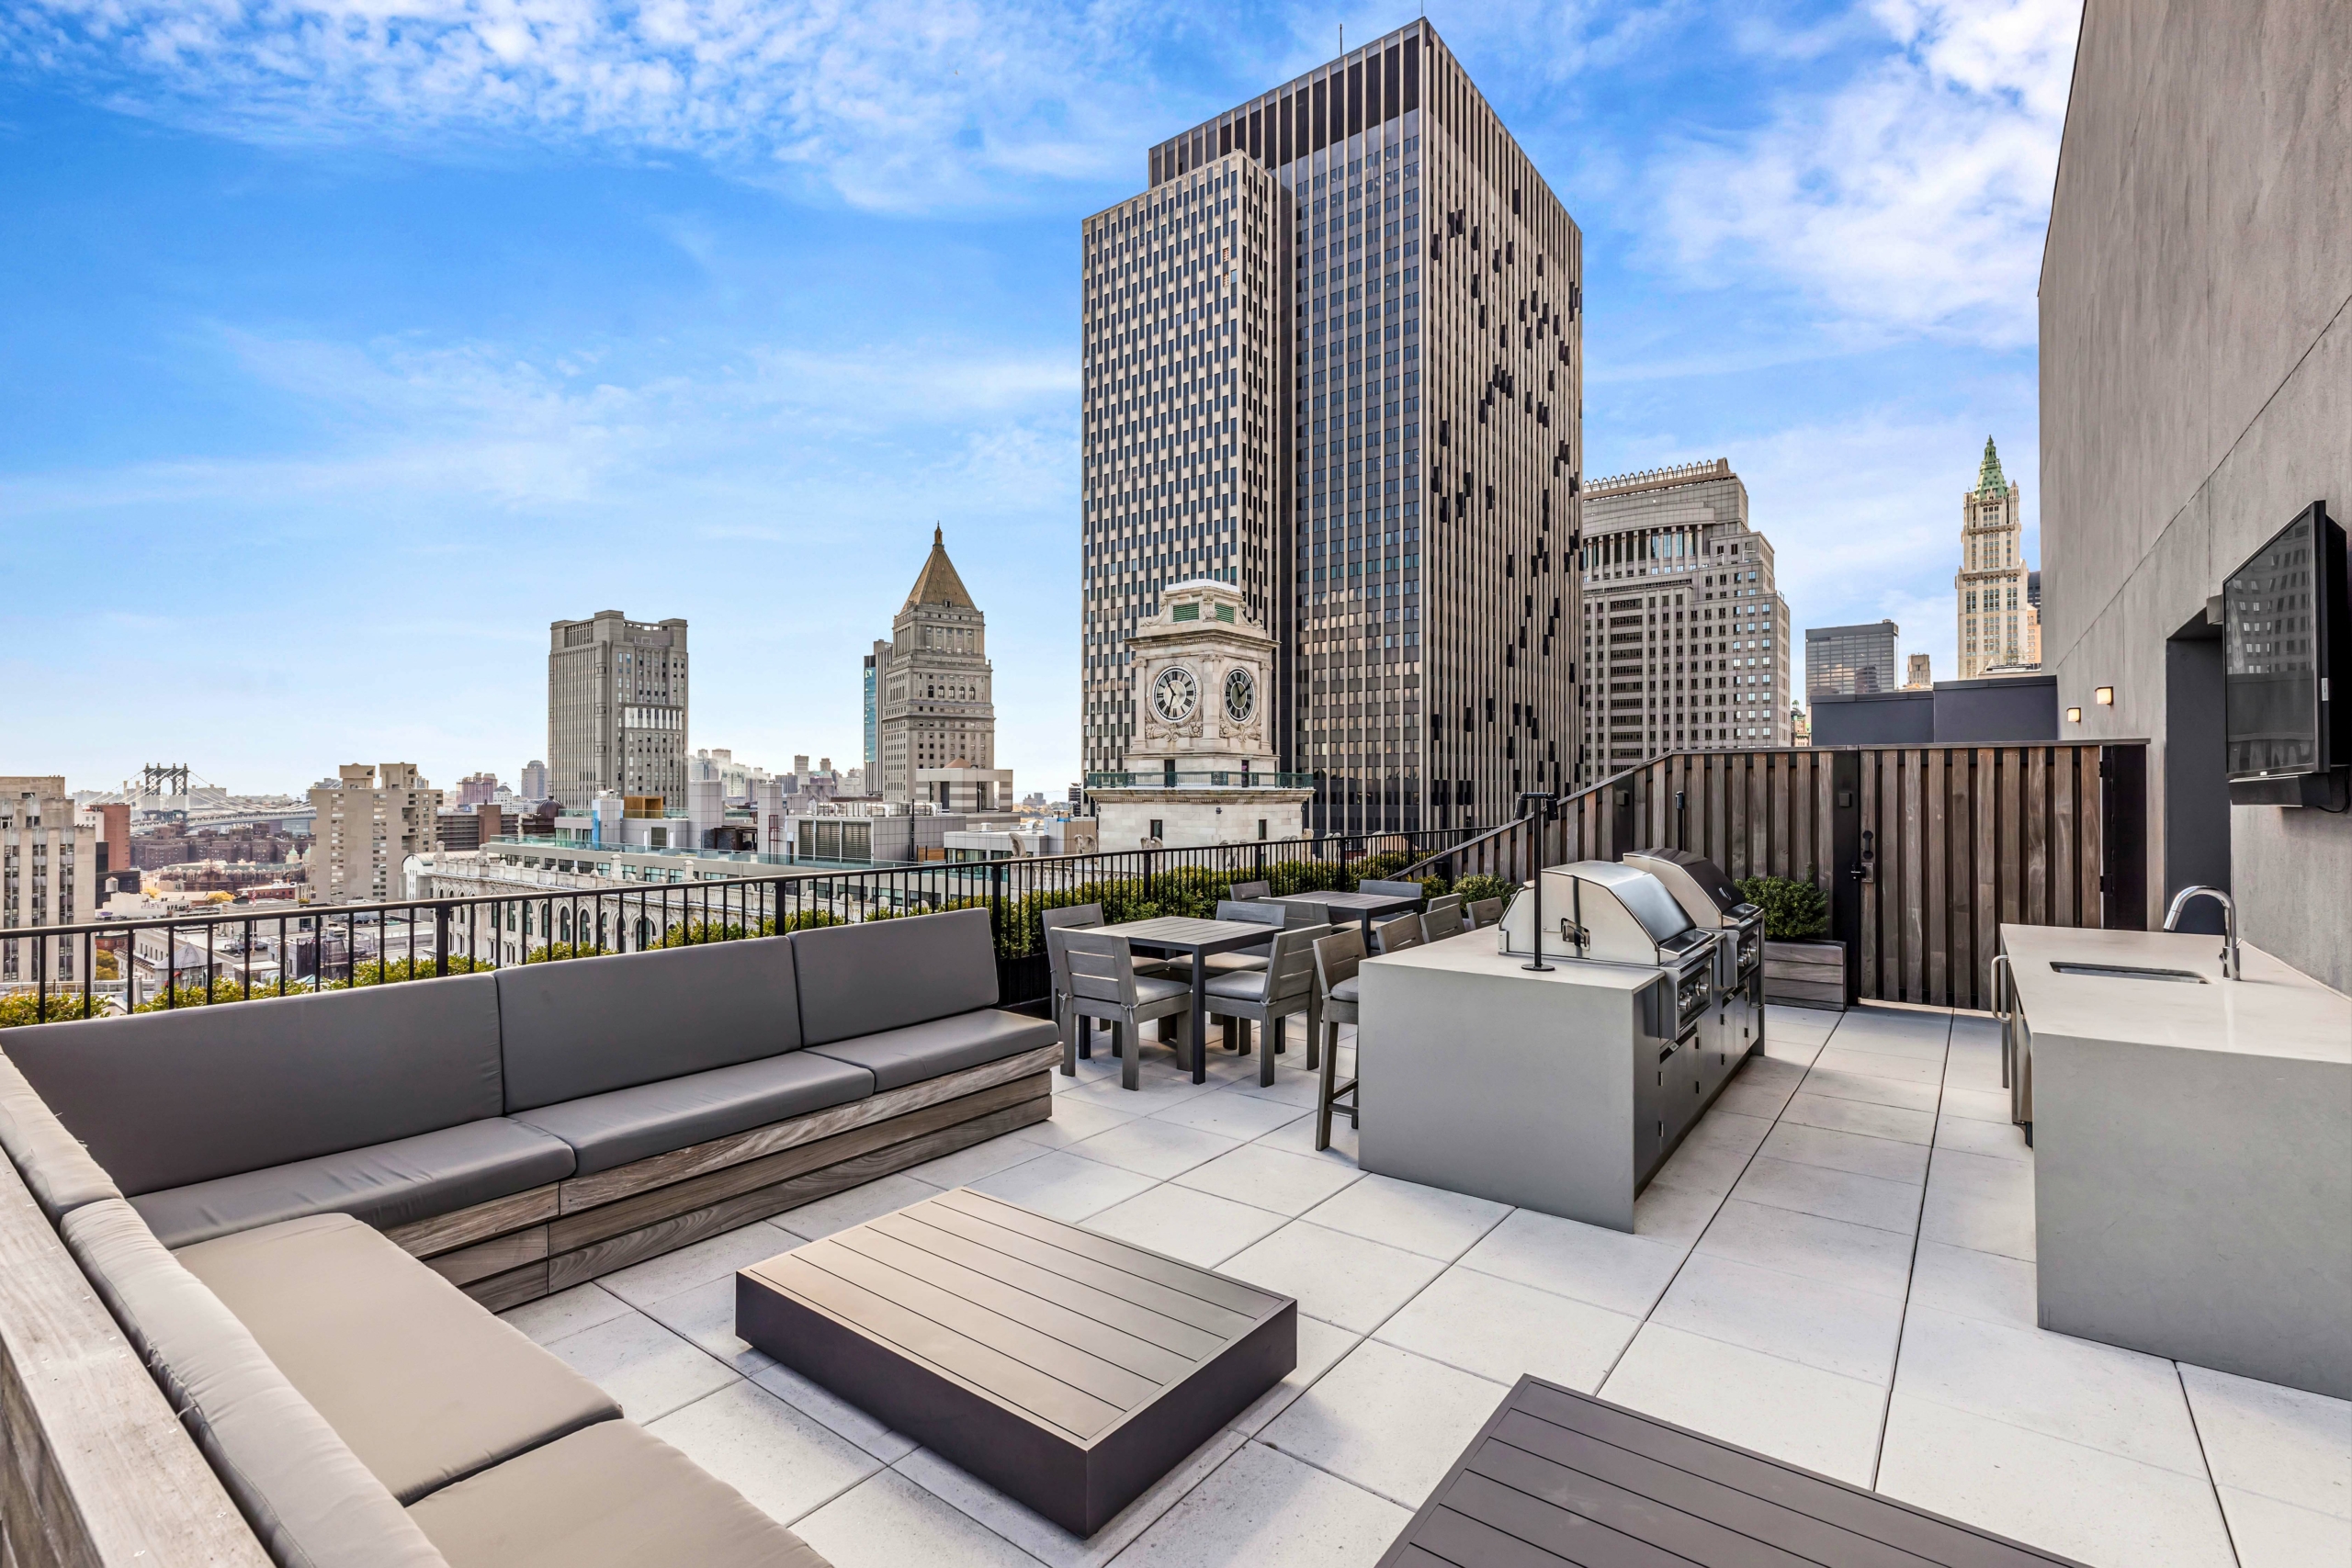 Một căn hộ áp mái trị giá 4.85 triệu USD ở khu TriBeCa của Manhattan hiện đang được rao bán trên thị trường. (Ảnh: Đăng dưới sự cho phép của The Field Team, Sotheby’s International Realty, New York)